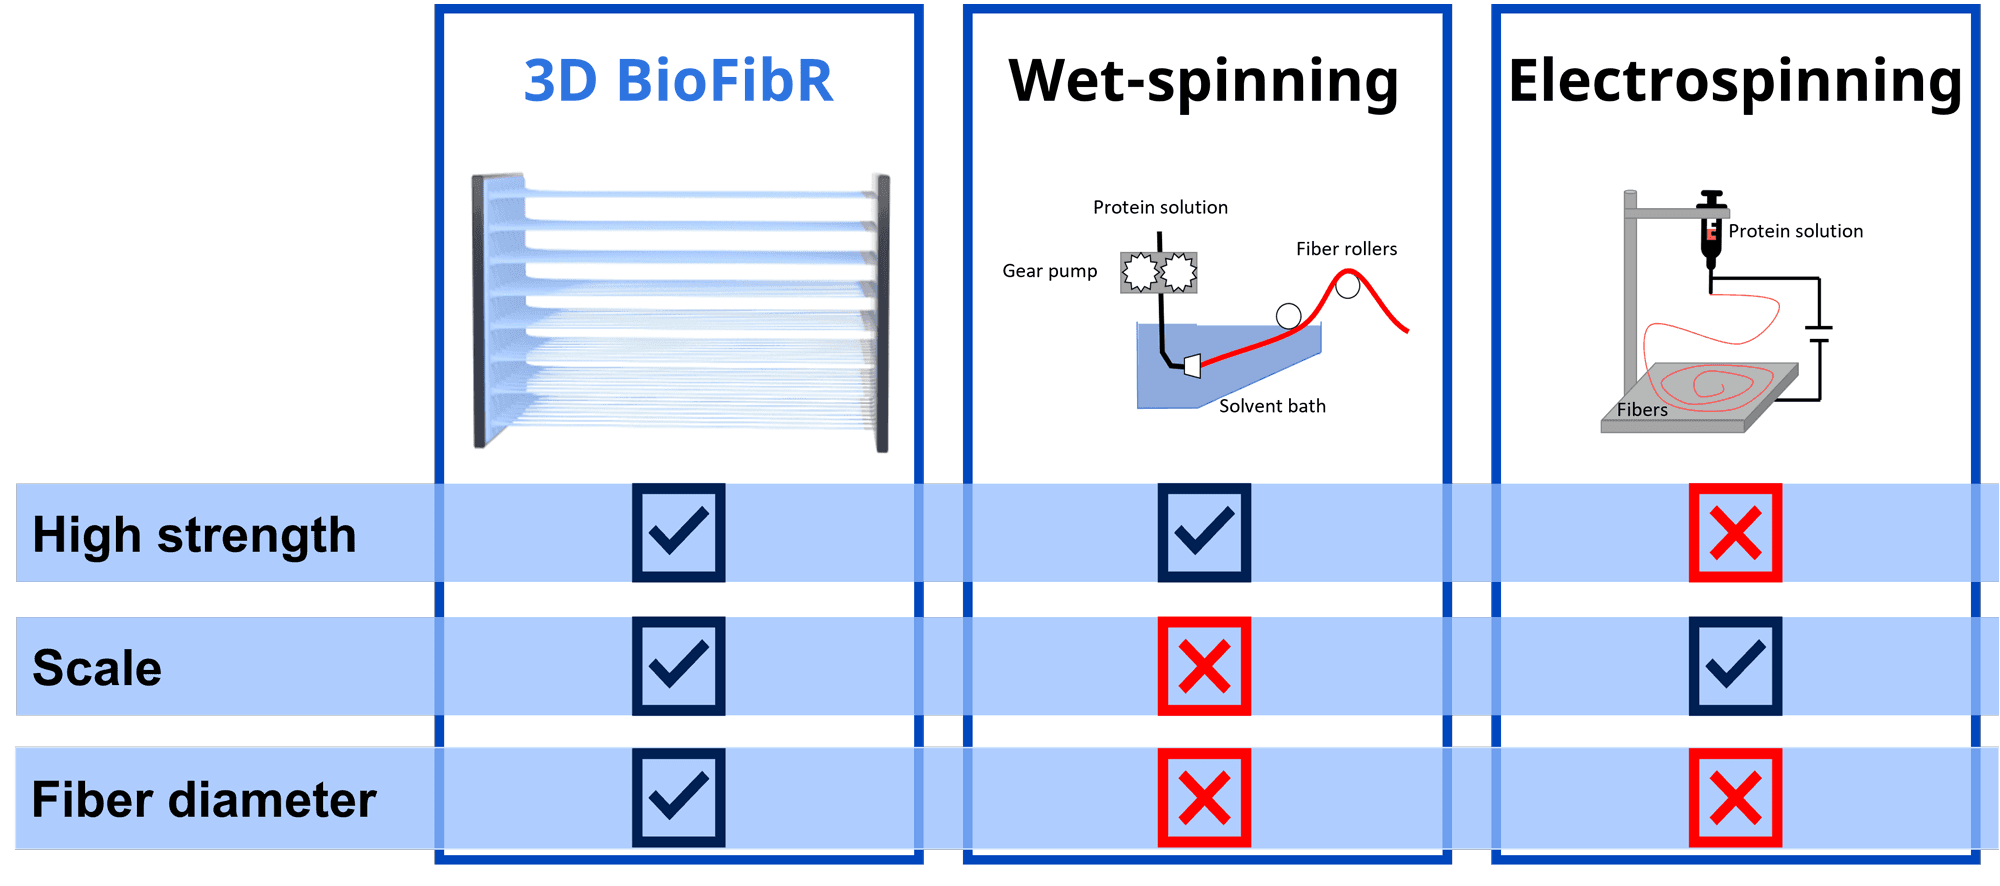 Product Our Platform - 3D BioFibR image